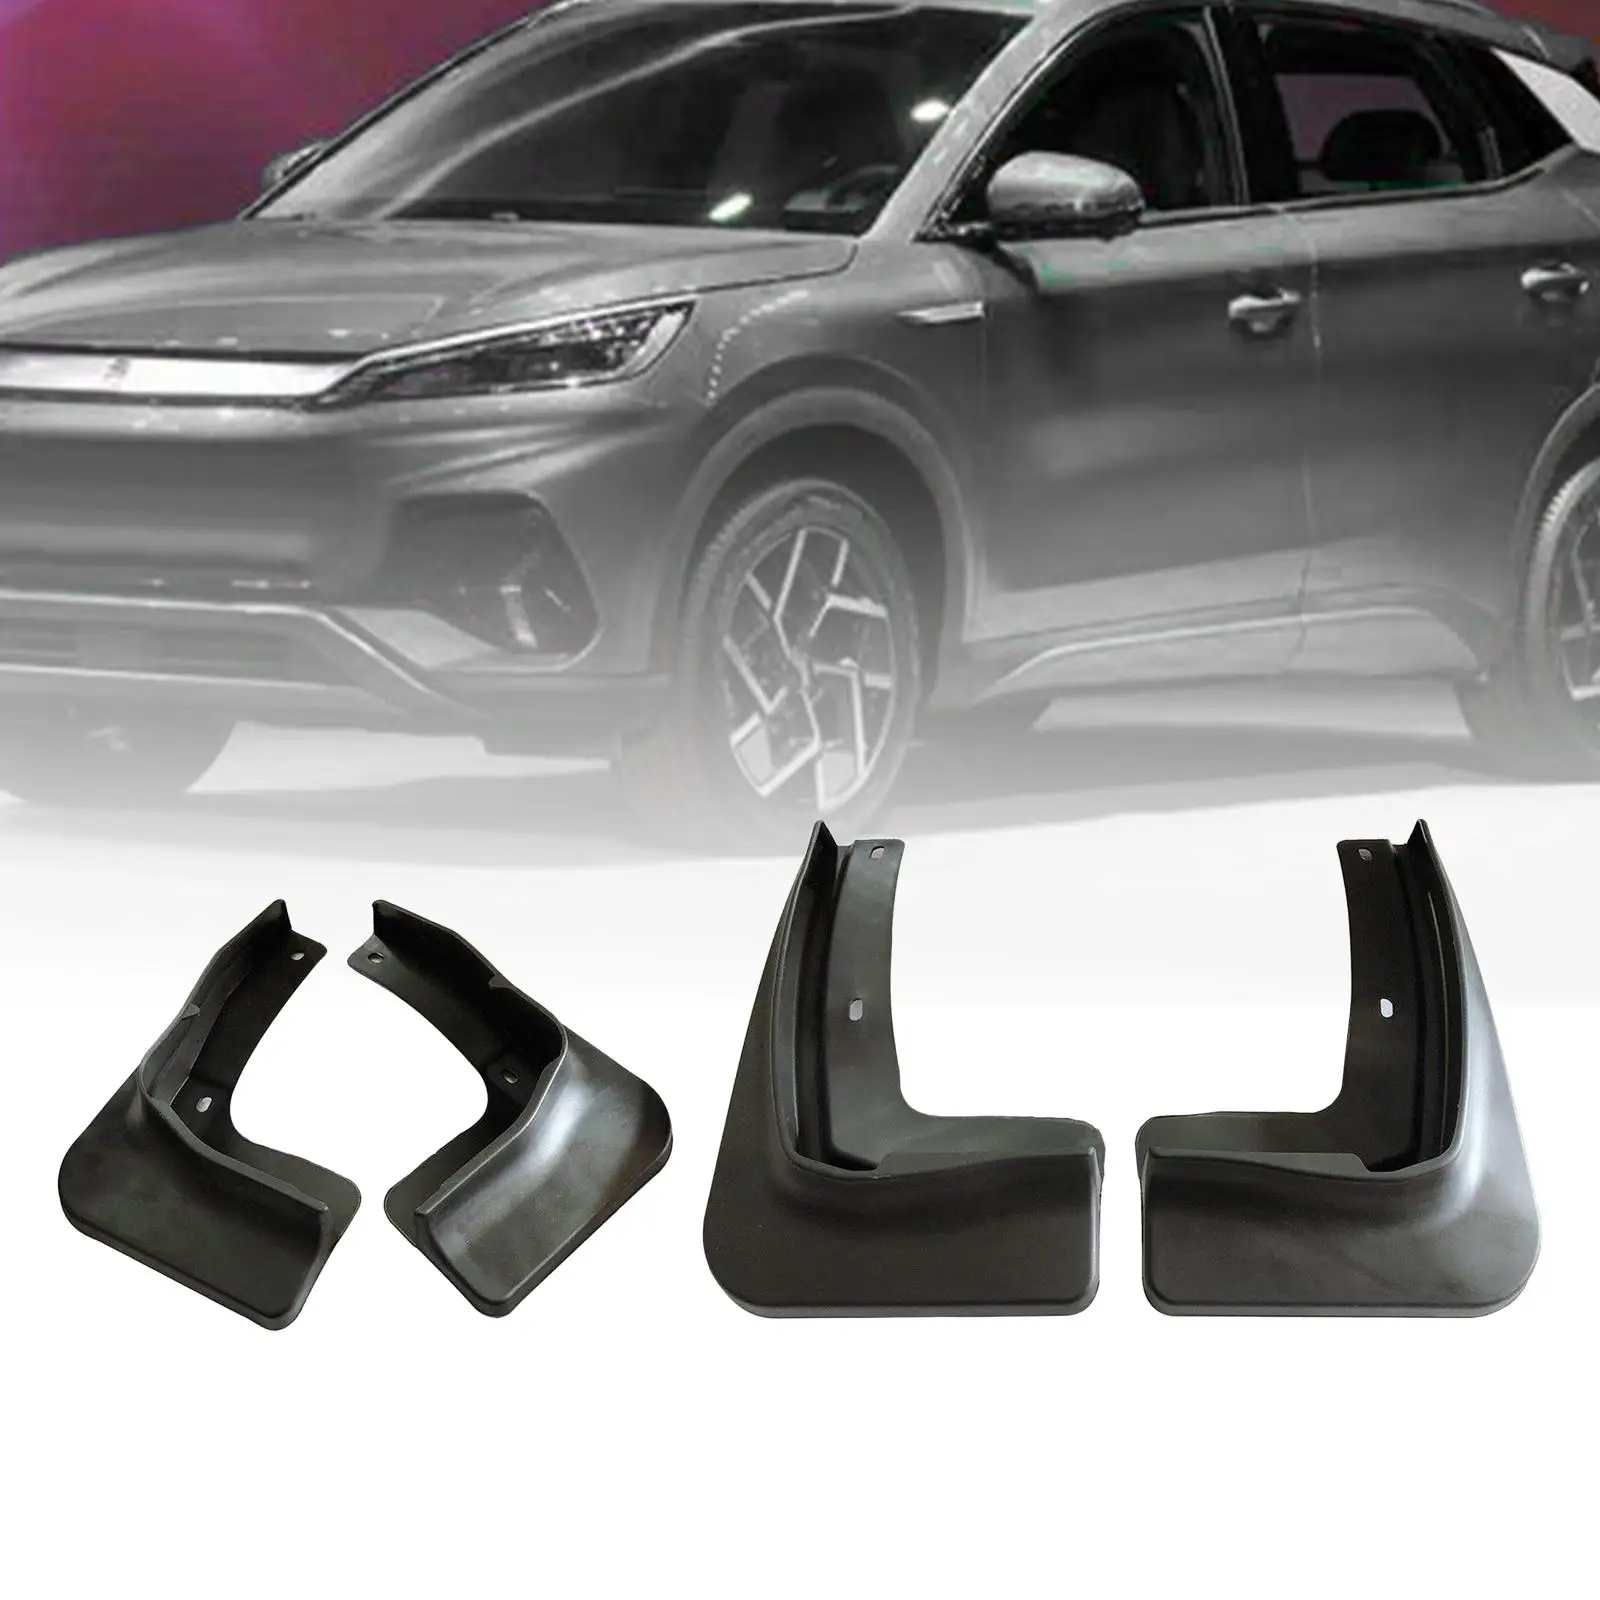 4Pcs Car Mudguard Replaces Parts Mudflaps Portable for Byd Yuan Plus